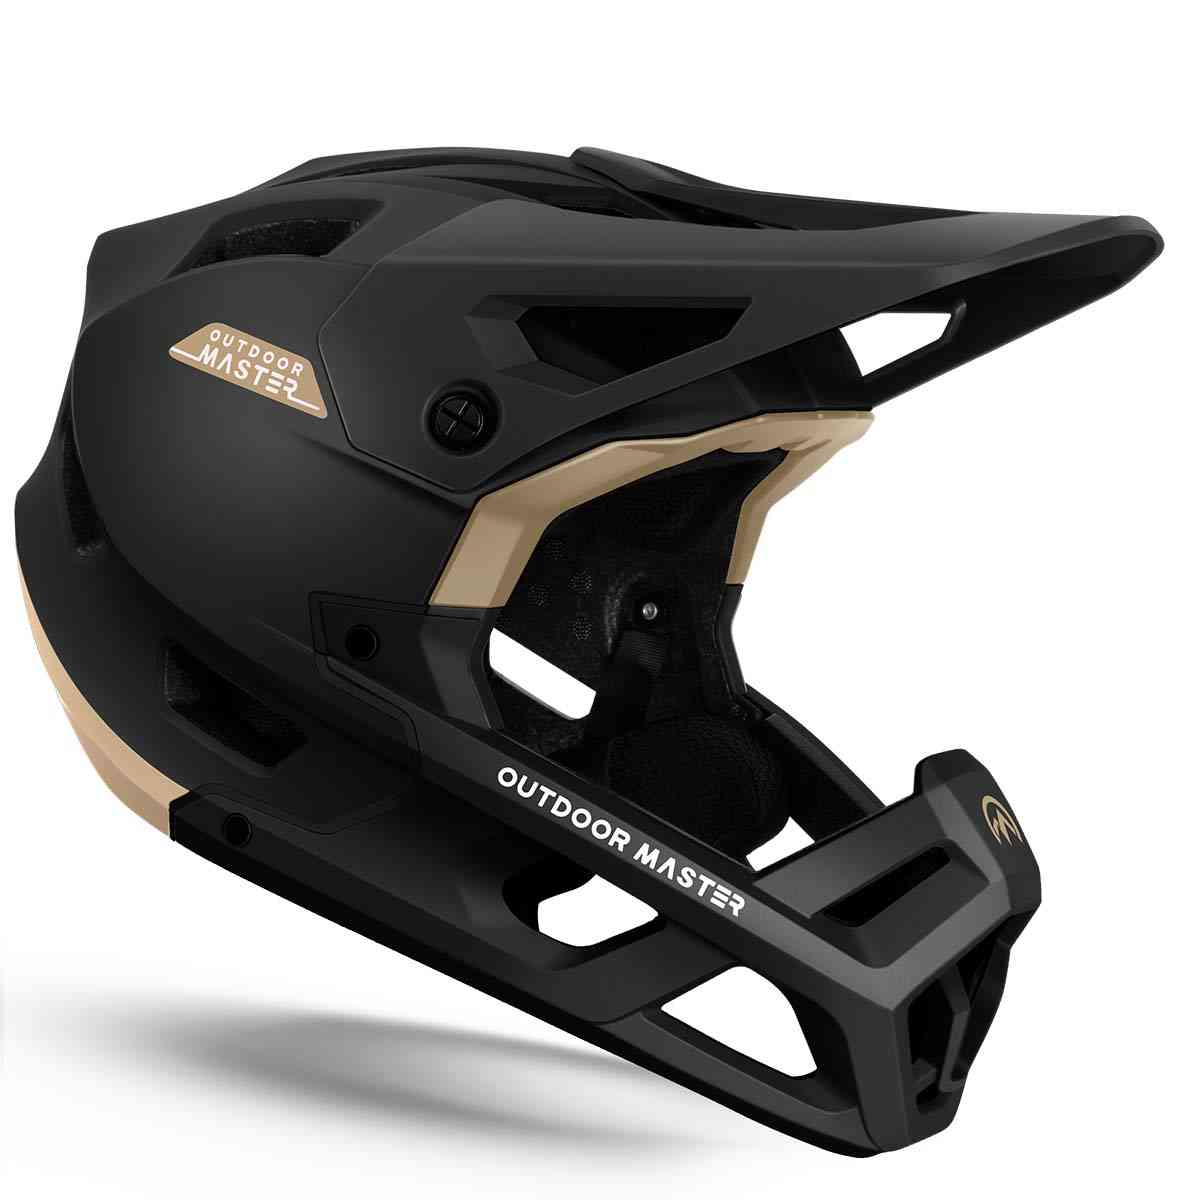 Helmet Liner for Men  Bike & Ski Helmet Liners - TrailHeads